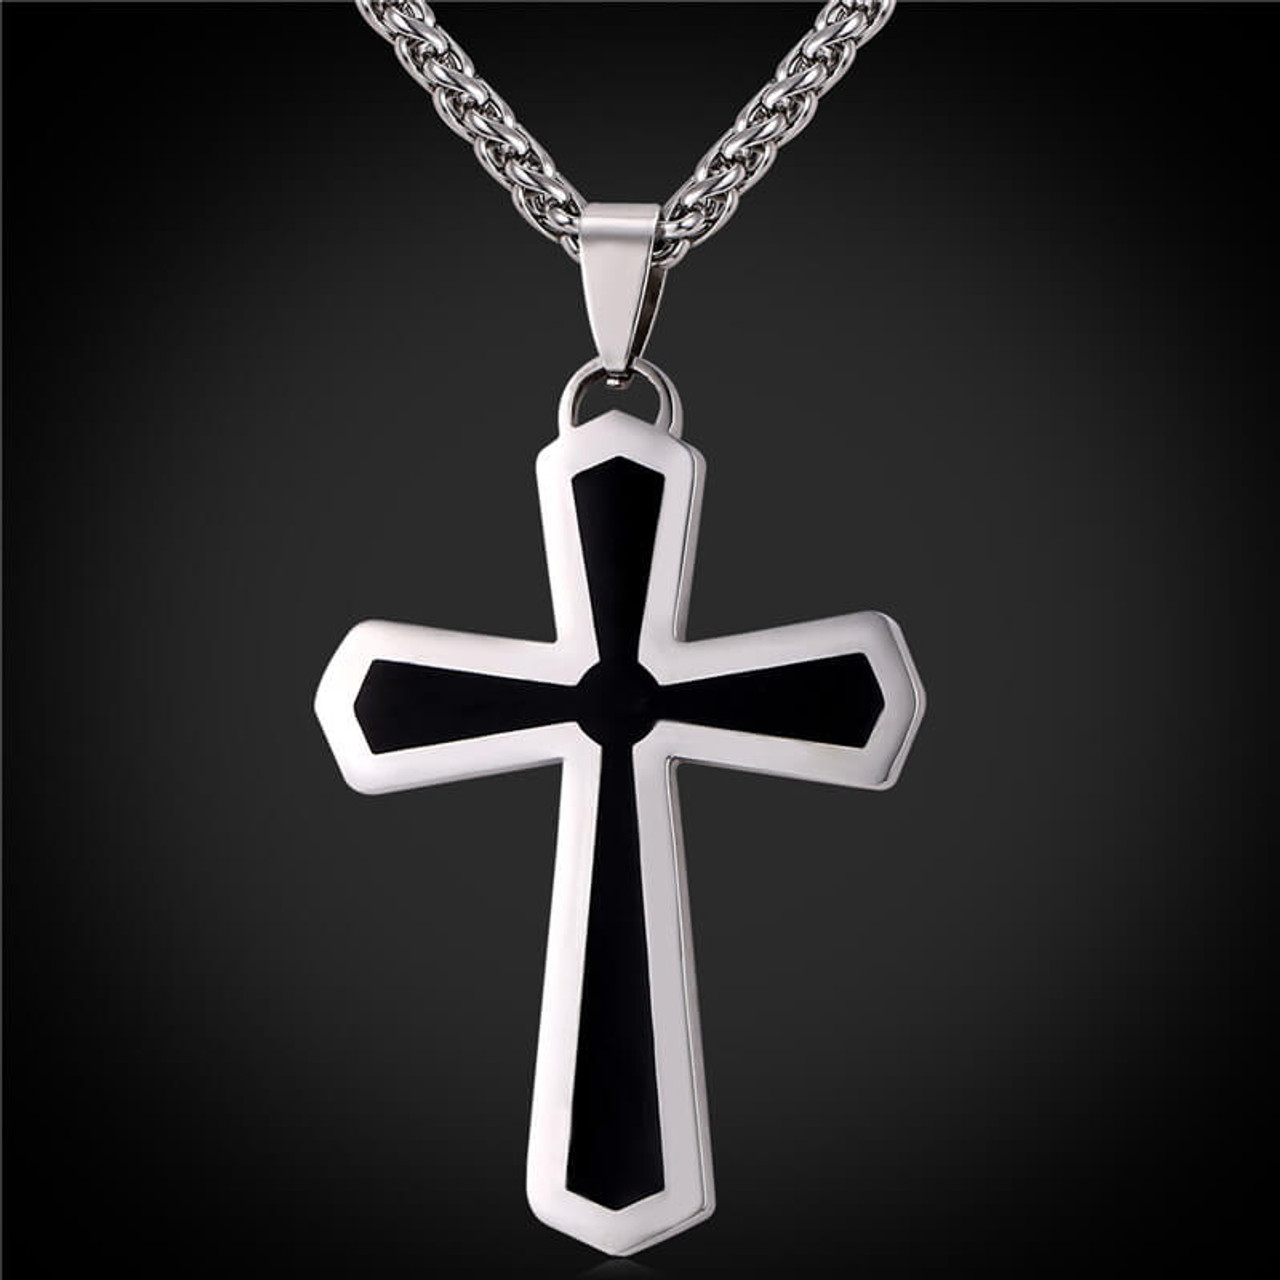 Men's Stainless Steel Cross Pendant - Best Accents Stainless Steel Cross Necklace Men